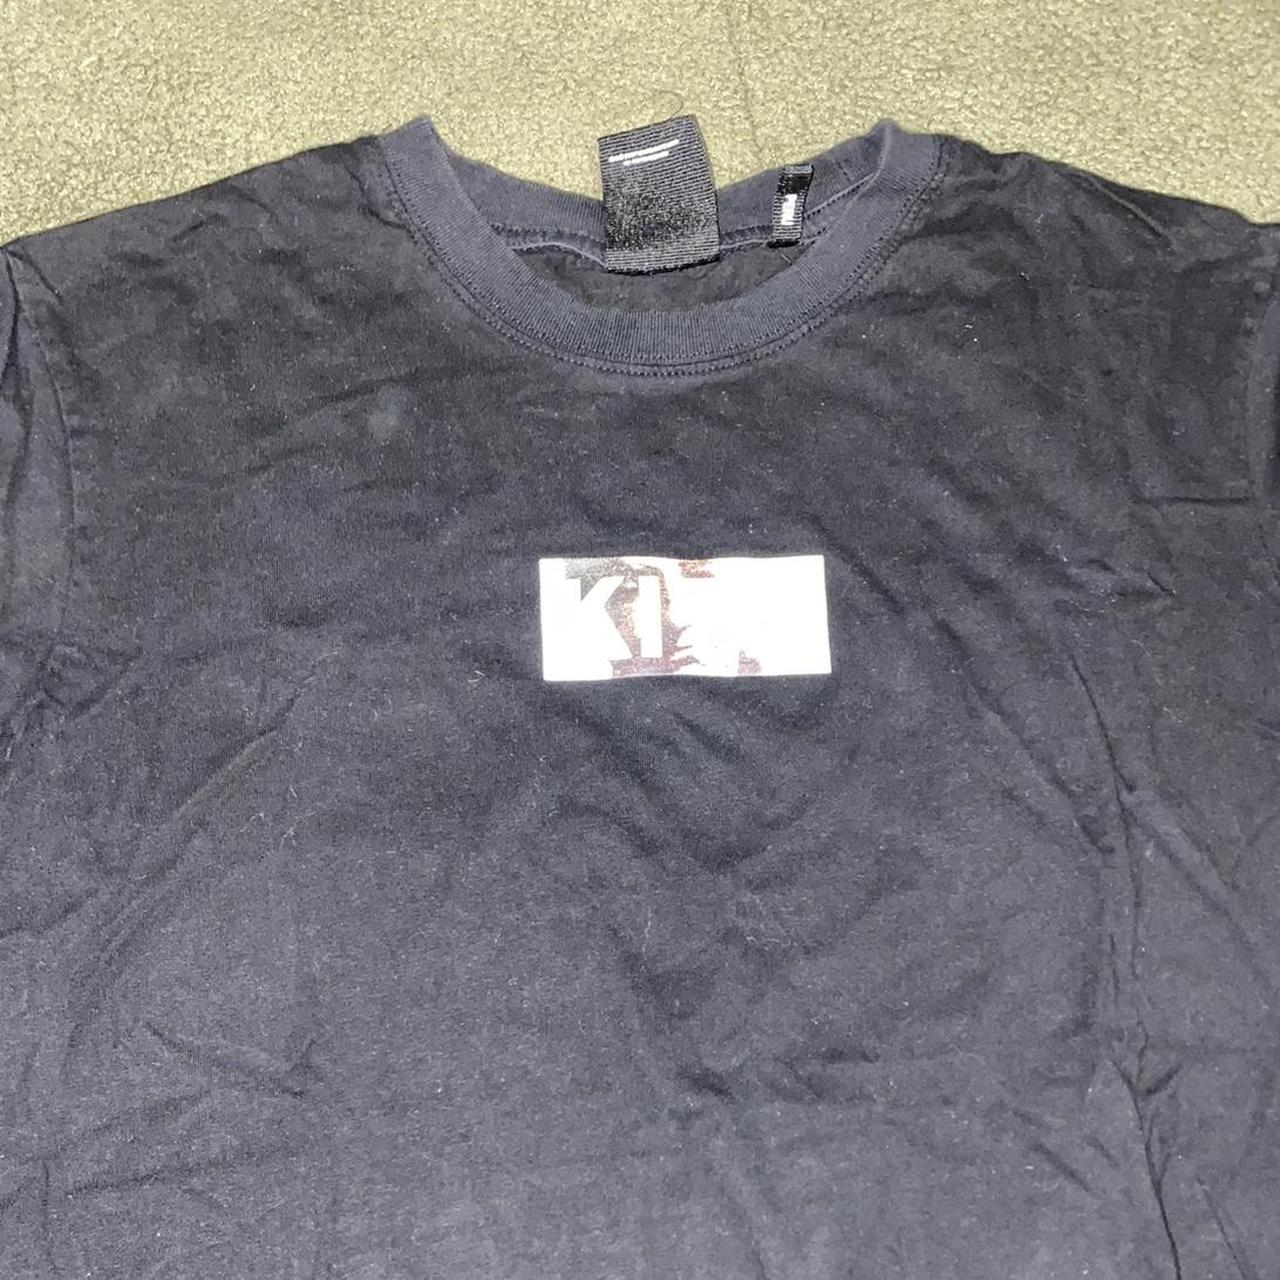 Black KITH t shirt - Depop